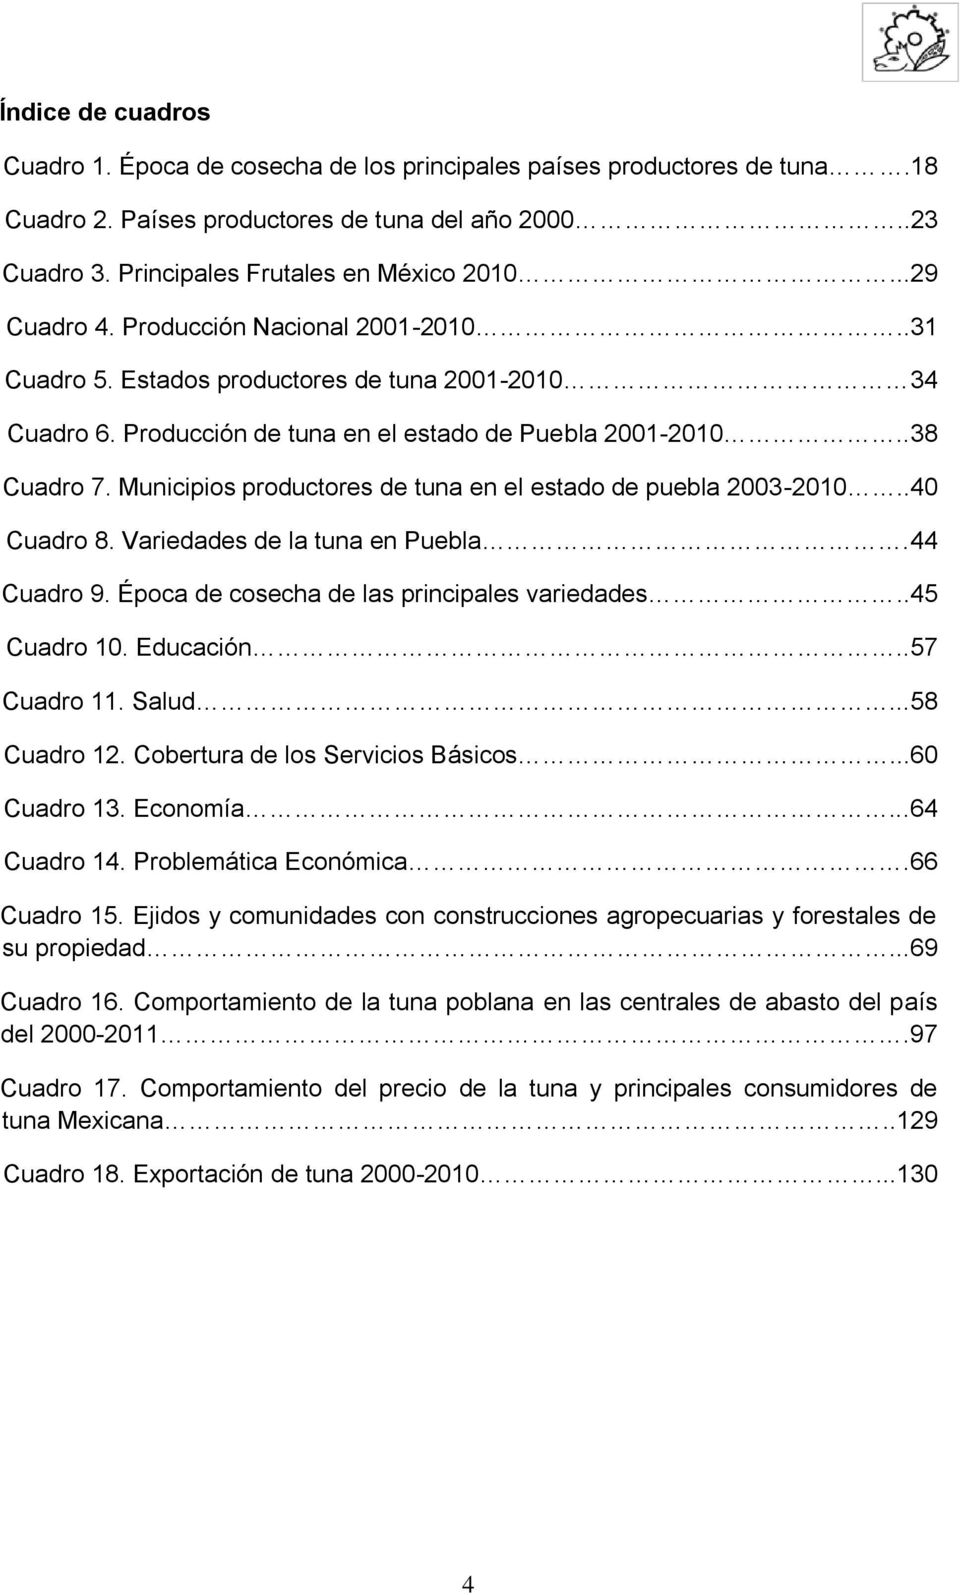 Municipios productores de tuna en el estado de puebla 2003-2010..40 Cuadro 8. Variedades de la tuna en Puebla.44 Cuadro 9. Época de cosecha de las principales variedades..45 Cuadro 10. Educación.